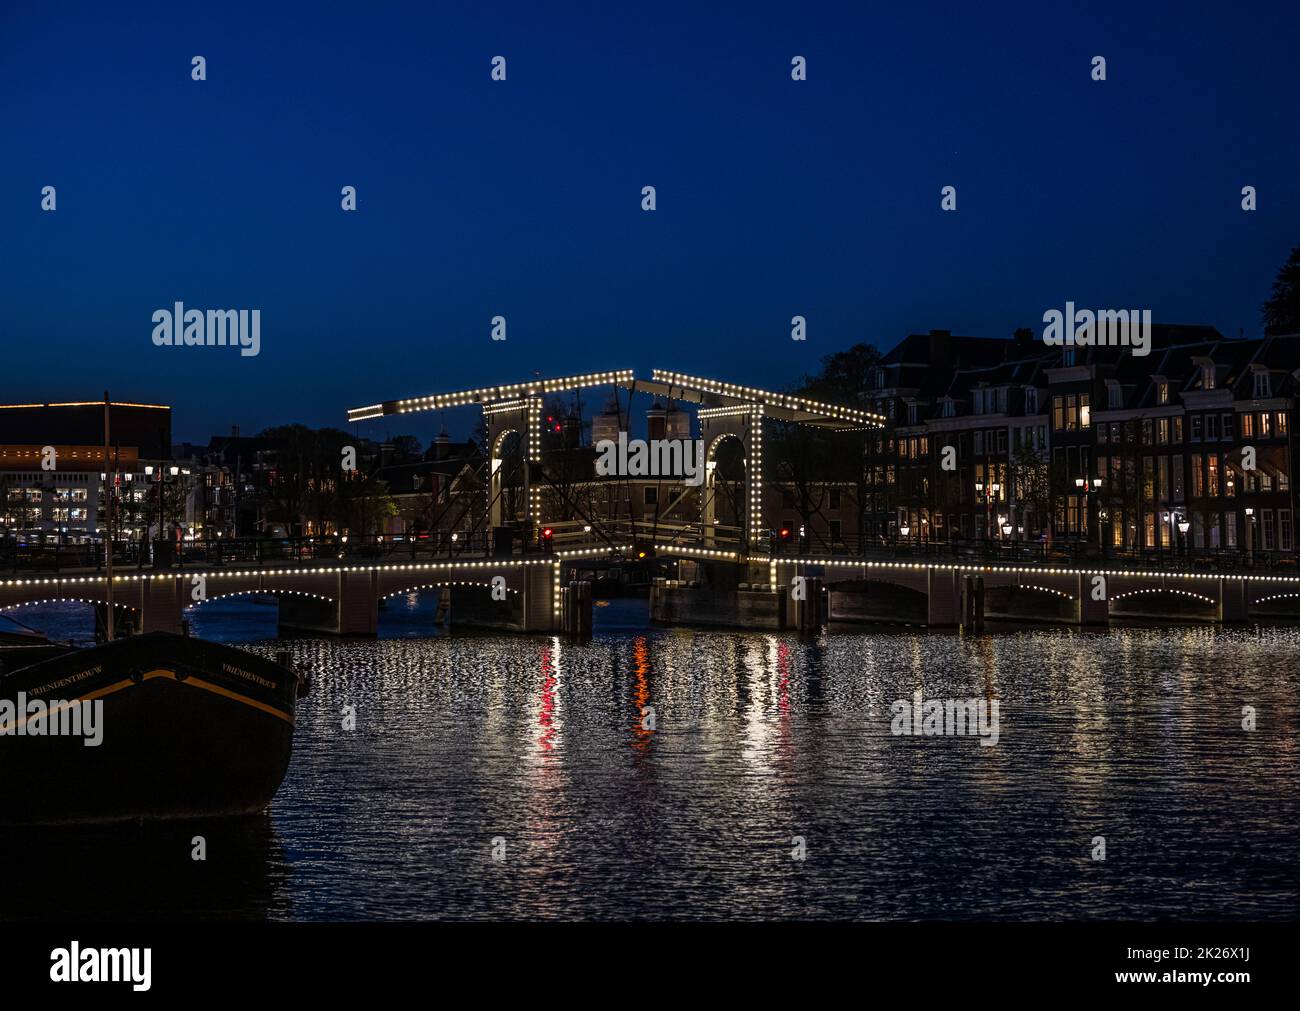 de magere brug or ‘skinny bridge’ at night, Amsterdam Stock Photo